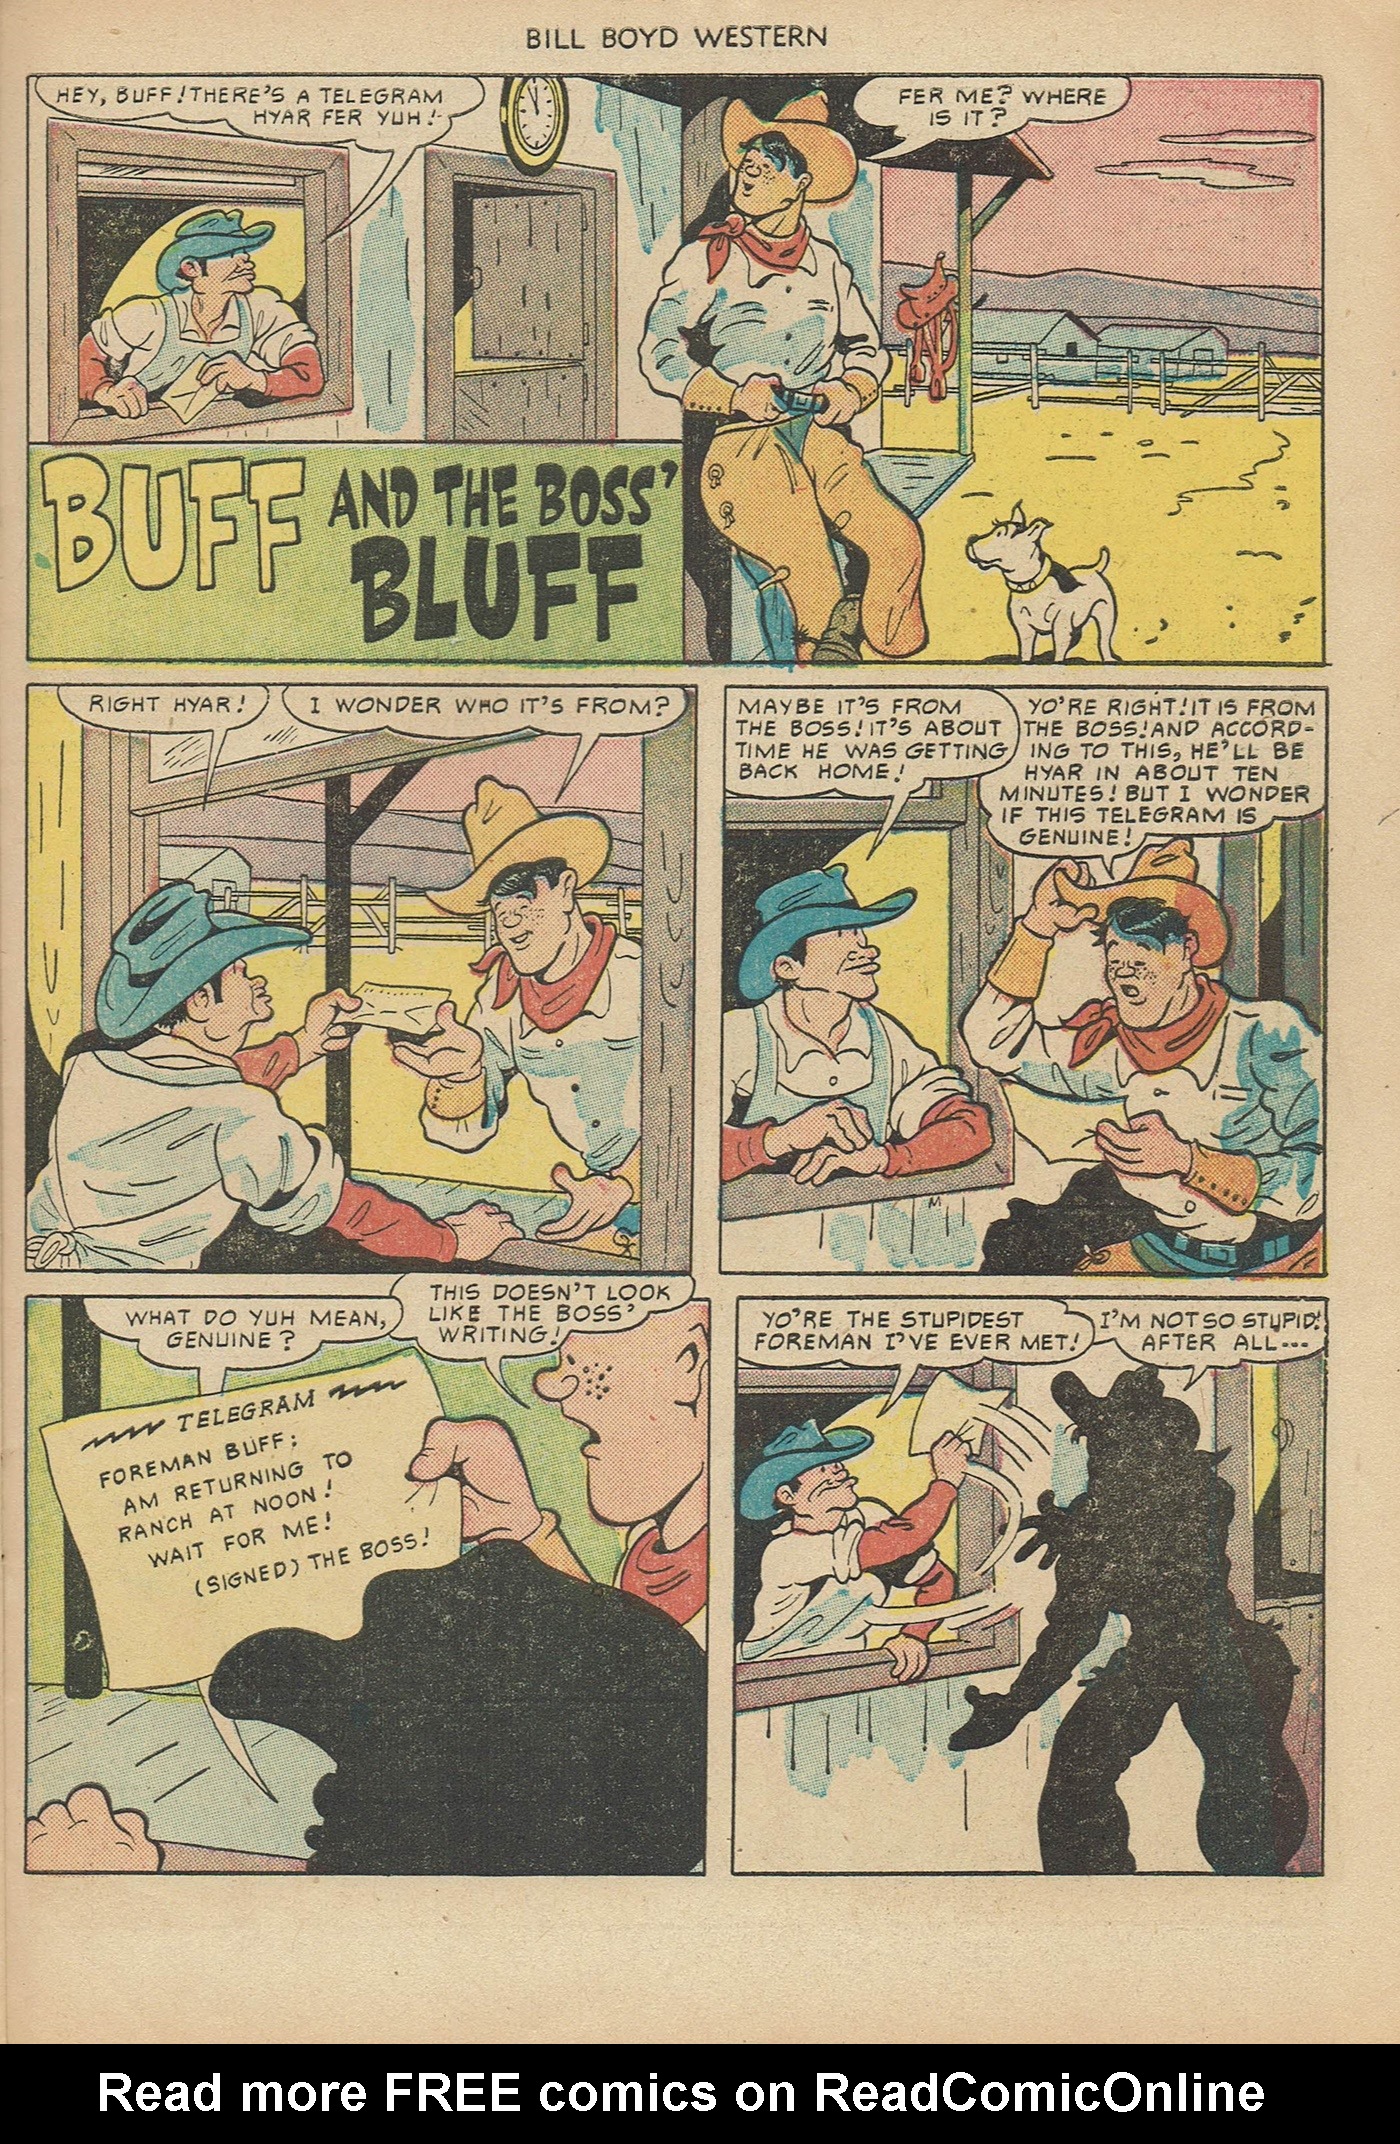 Read online Bill Boyd Western comic -  Issue #6 - 31